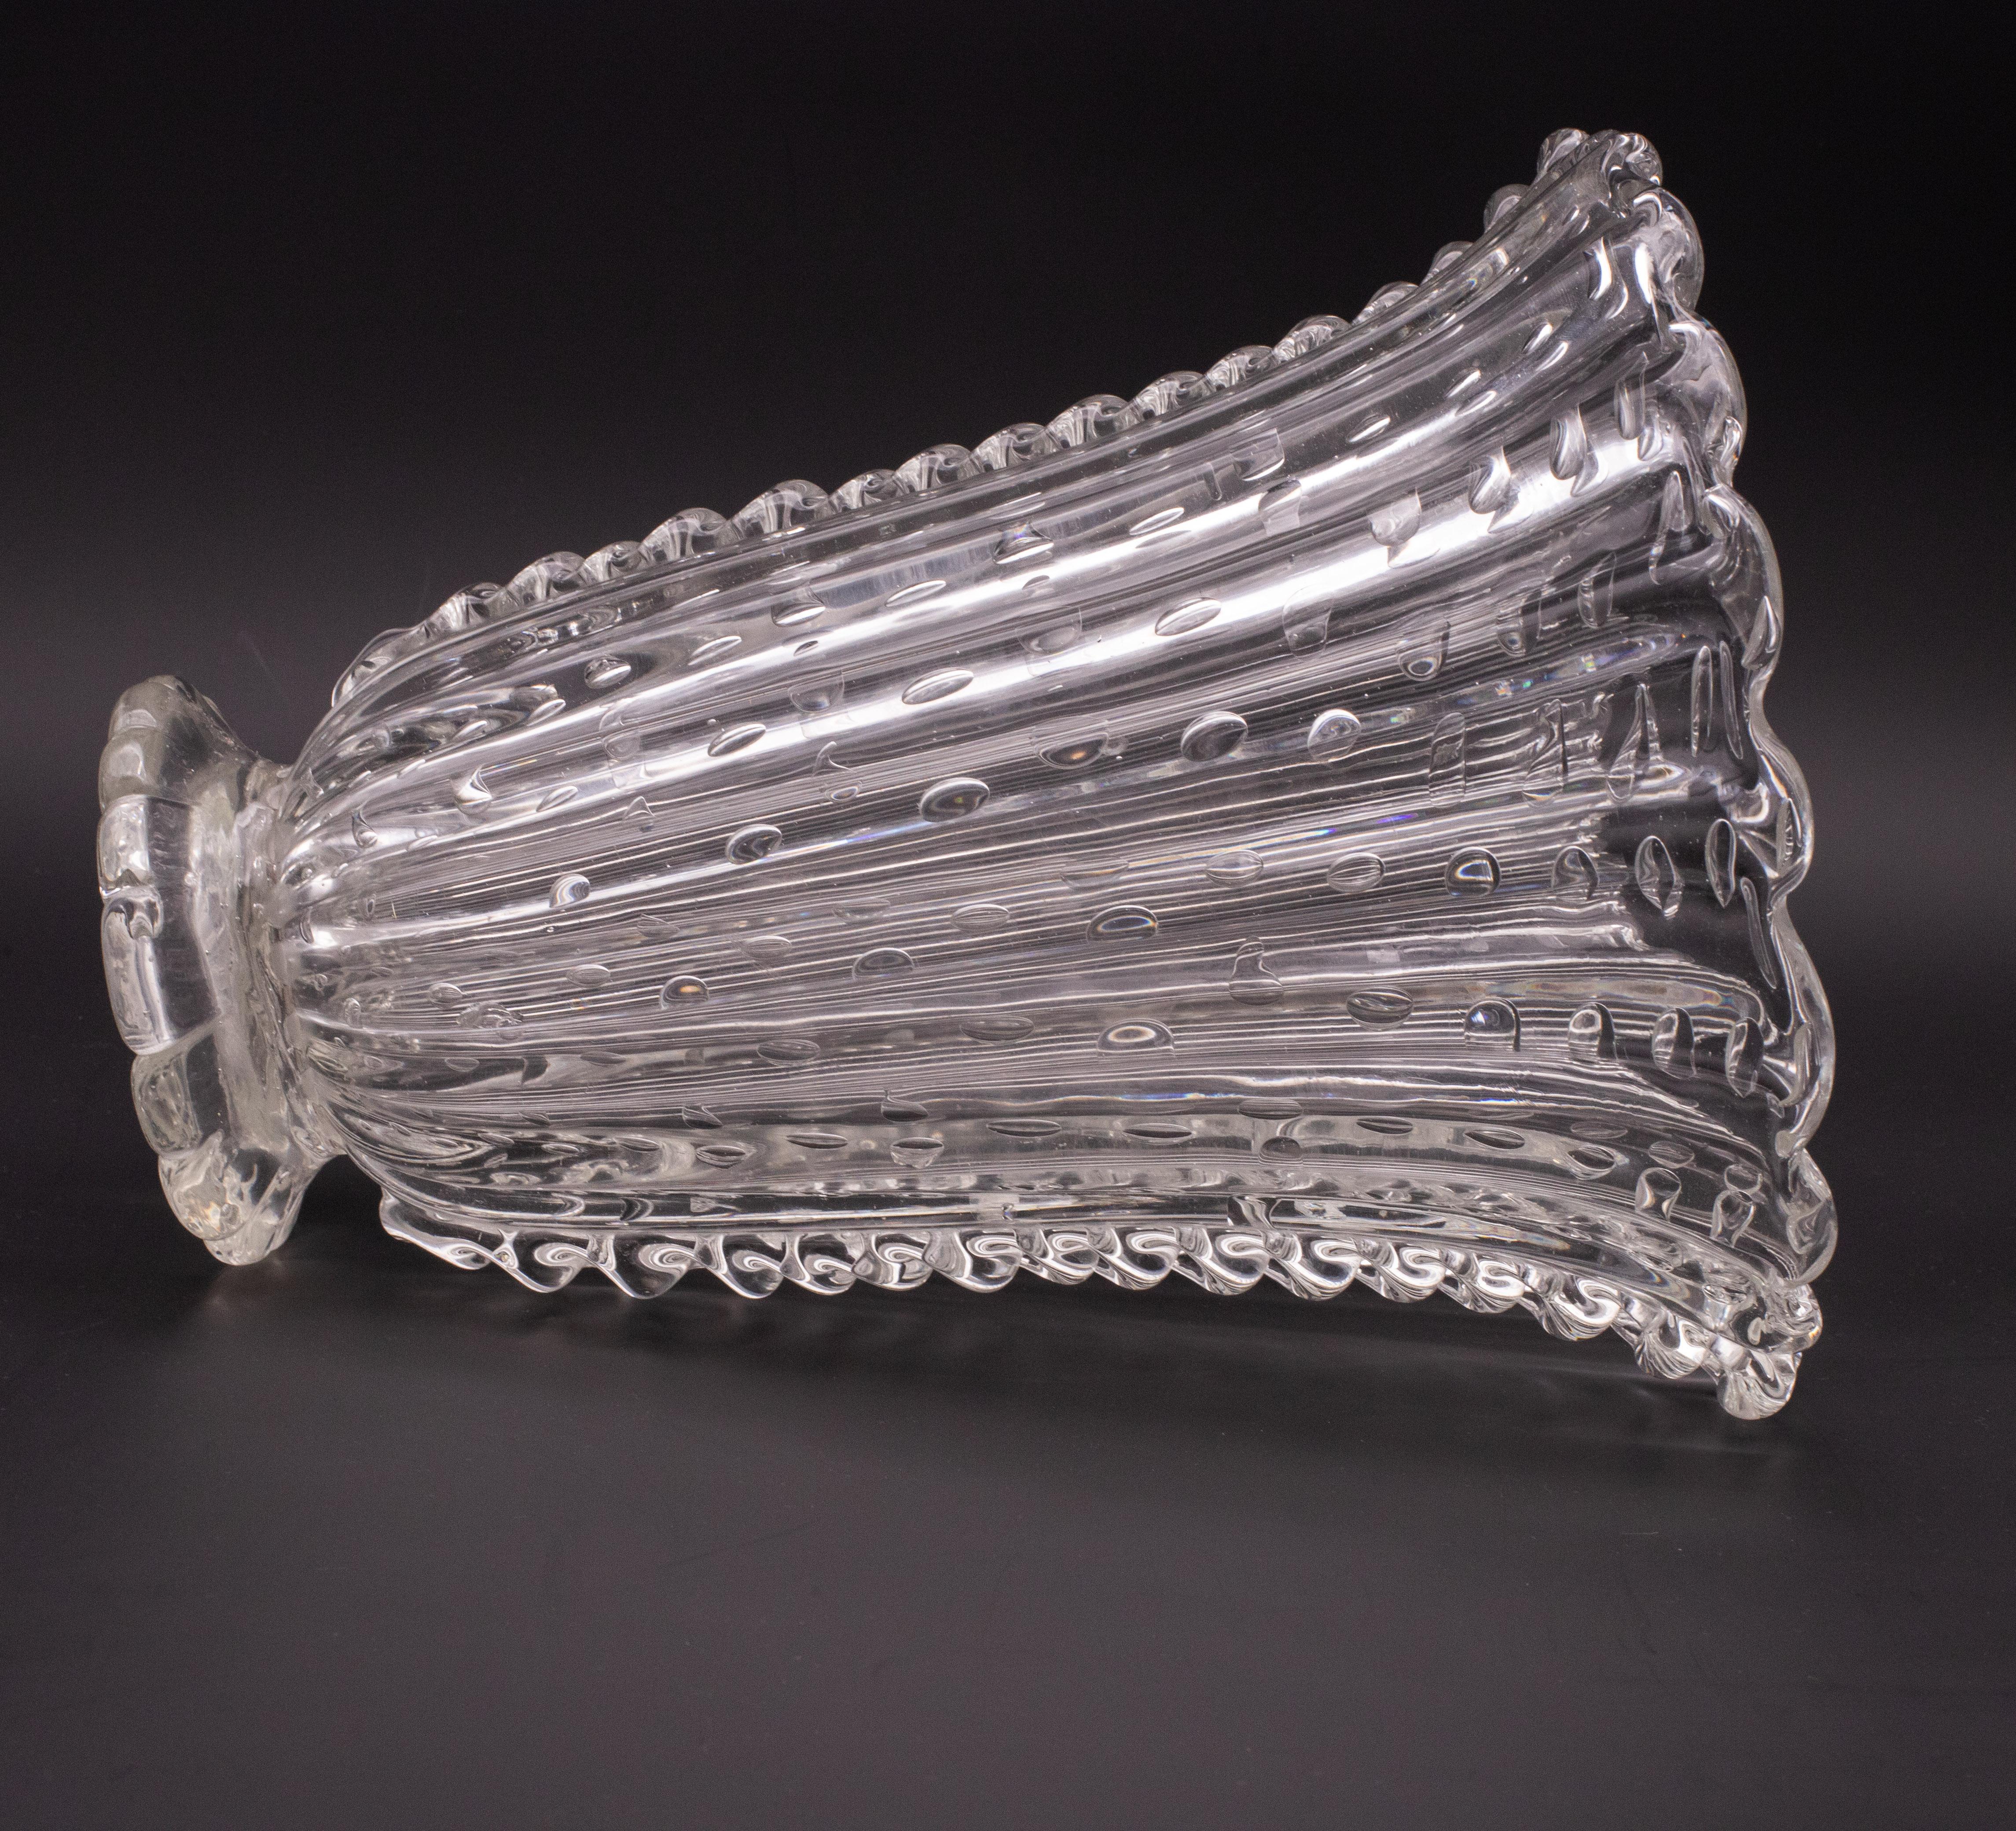 Magnifique vase de Murano réalisé par les verreries Barovier et Toso dans les années 1930-40.
Une touche unique de classe pour décorer n'importe quel espace.
Le vase a été réalisé en utilisant la technique de la bulle.
Le vase présente un signe de